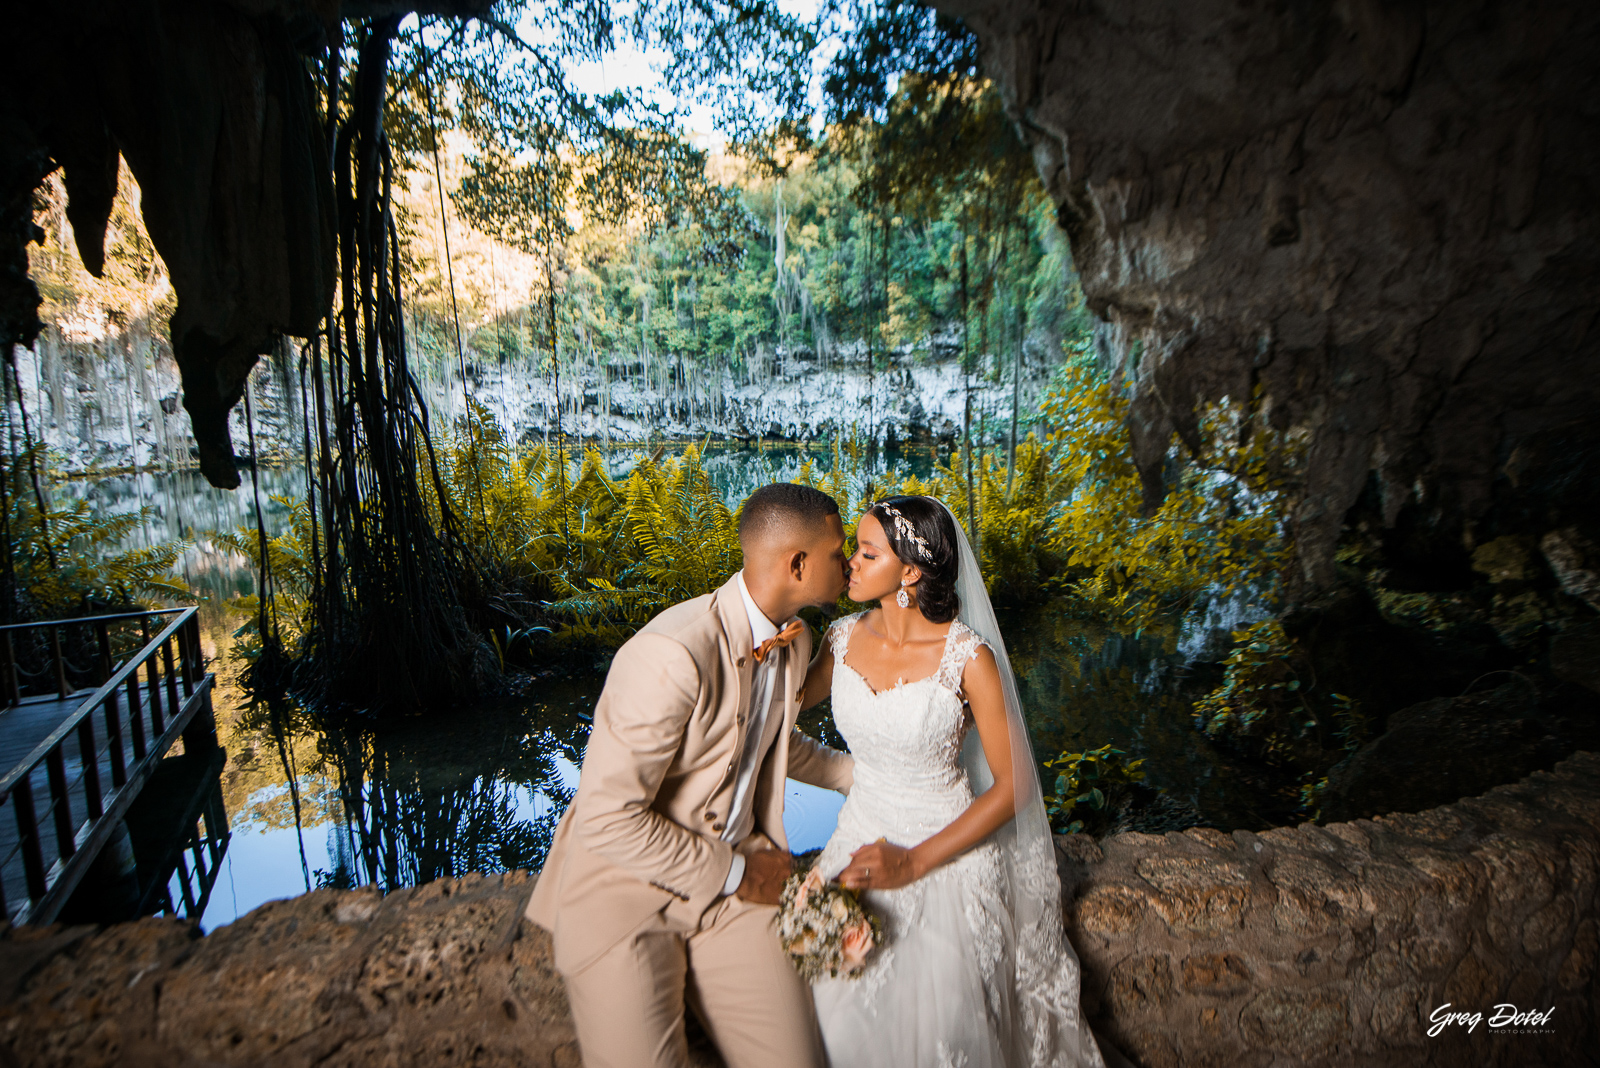 Sesión de fotos pre boda o novios en el Parque los 3 Ojos de Santo Domingo, República Dominicana por el fotografo dominicano Greg Dotel Photography. Una sesión de novios diferentes.